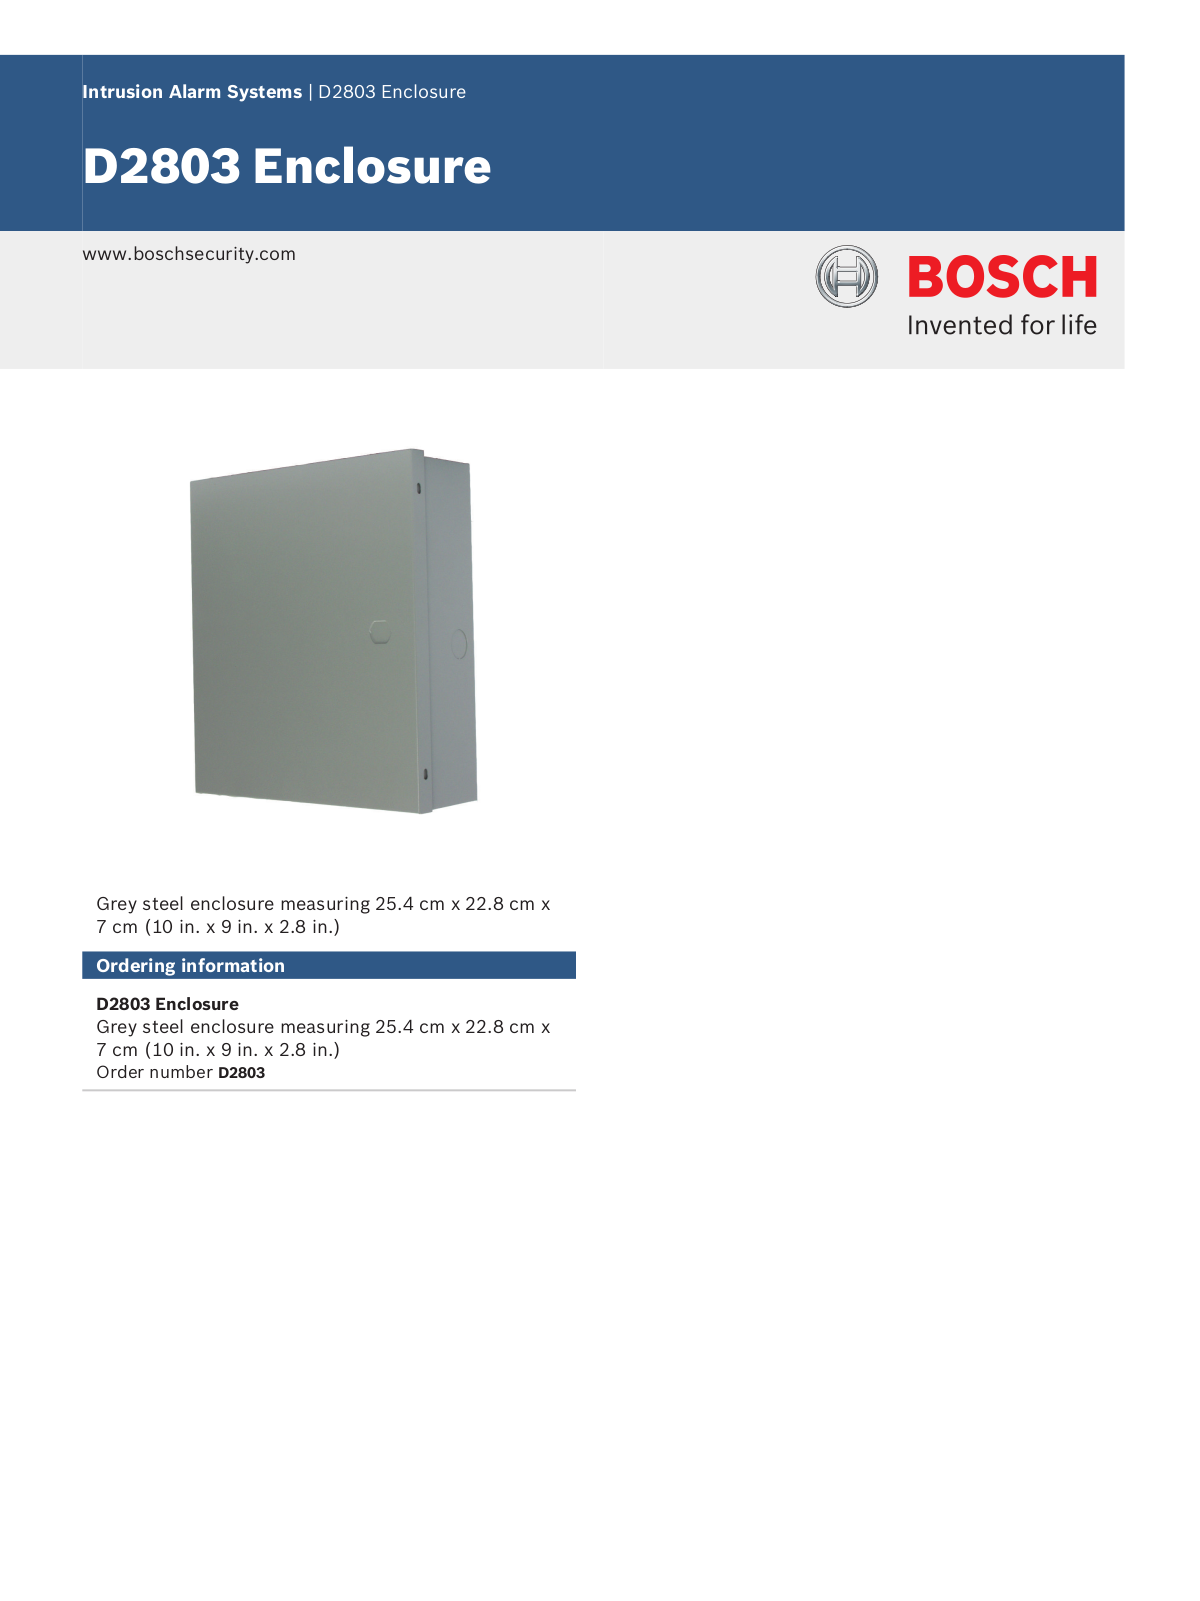 Bosch D2803 Specsheet